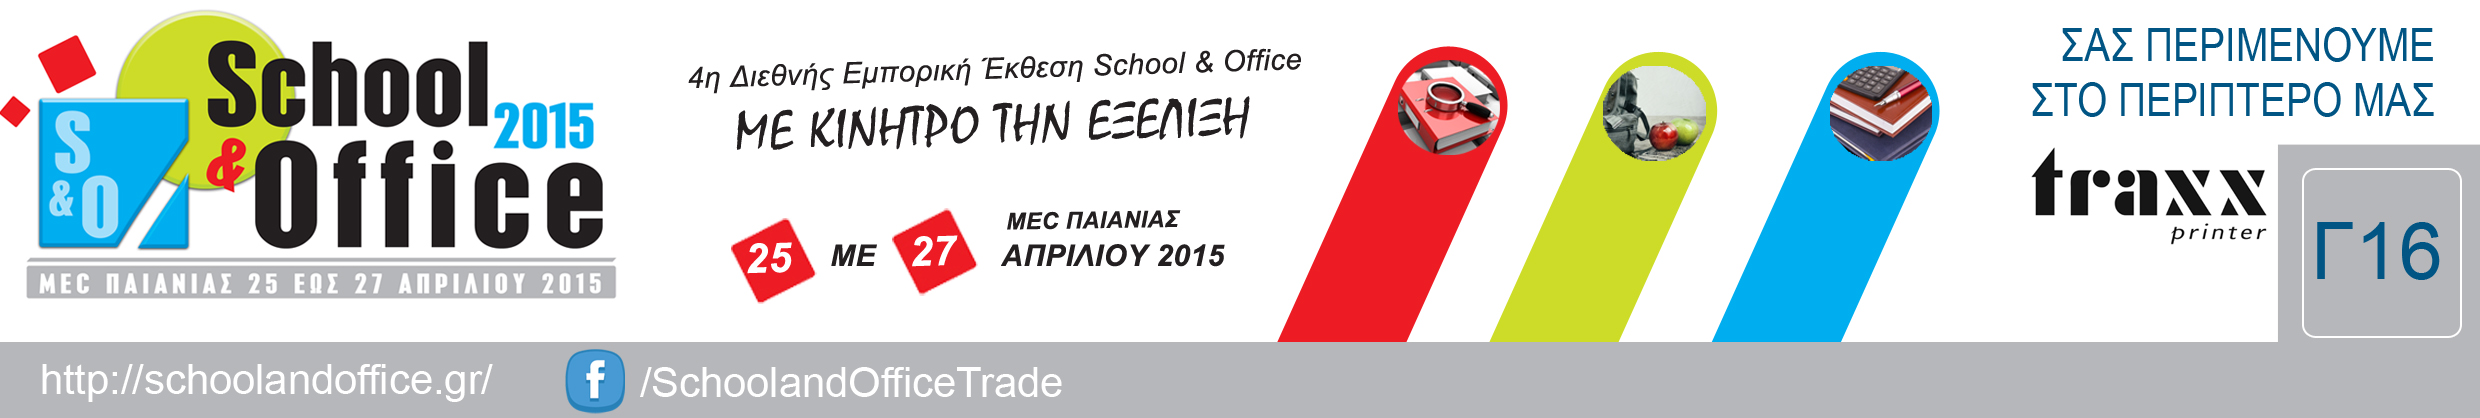 School & Office 2015